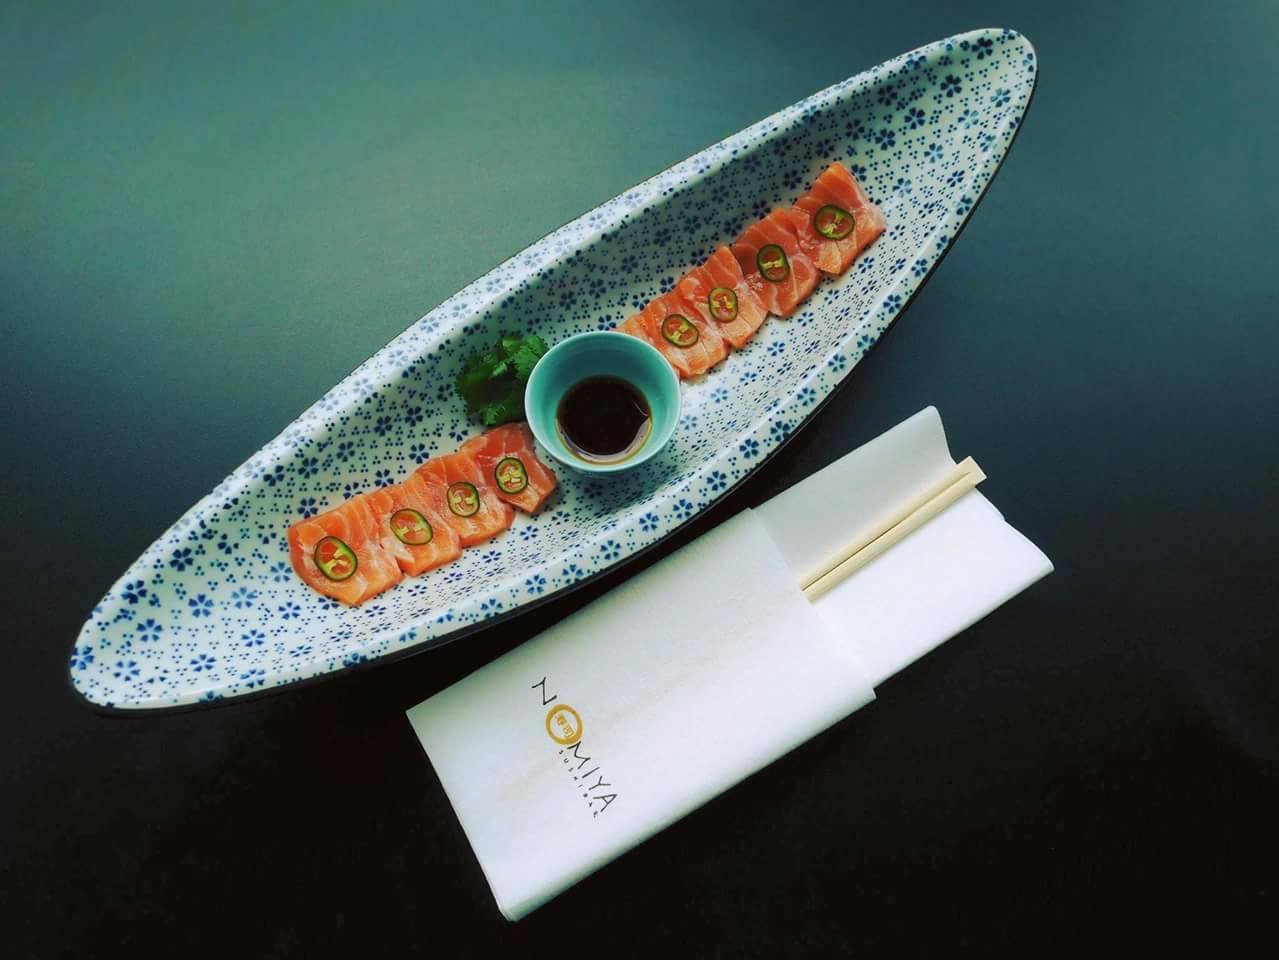 Nomiya Sushi Bar